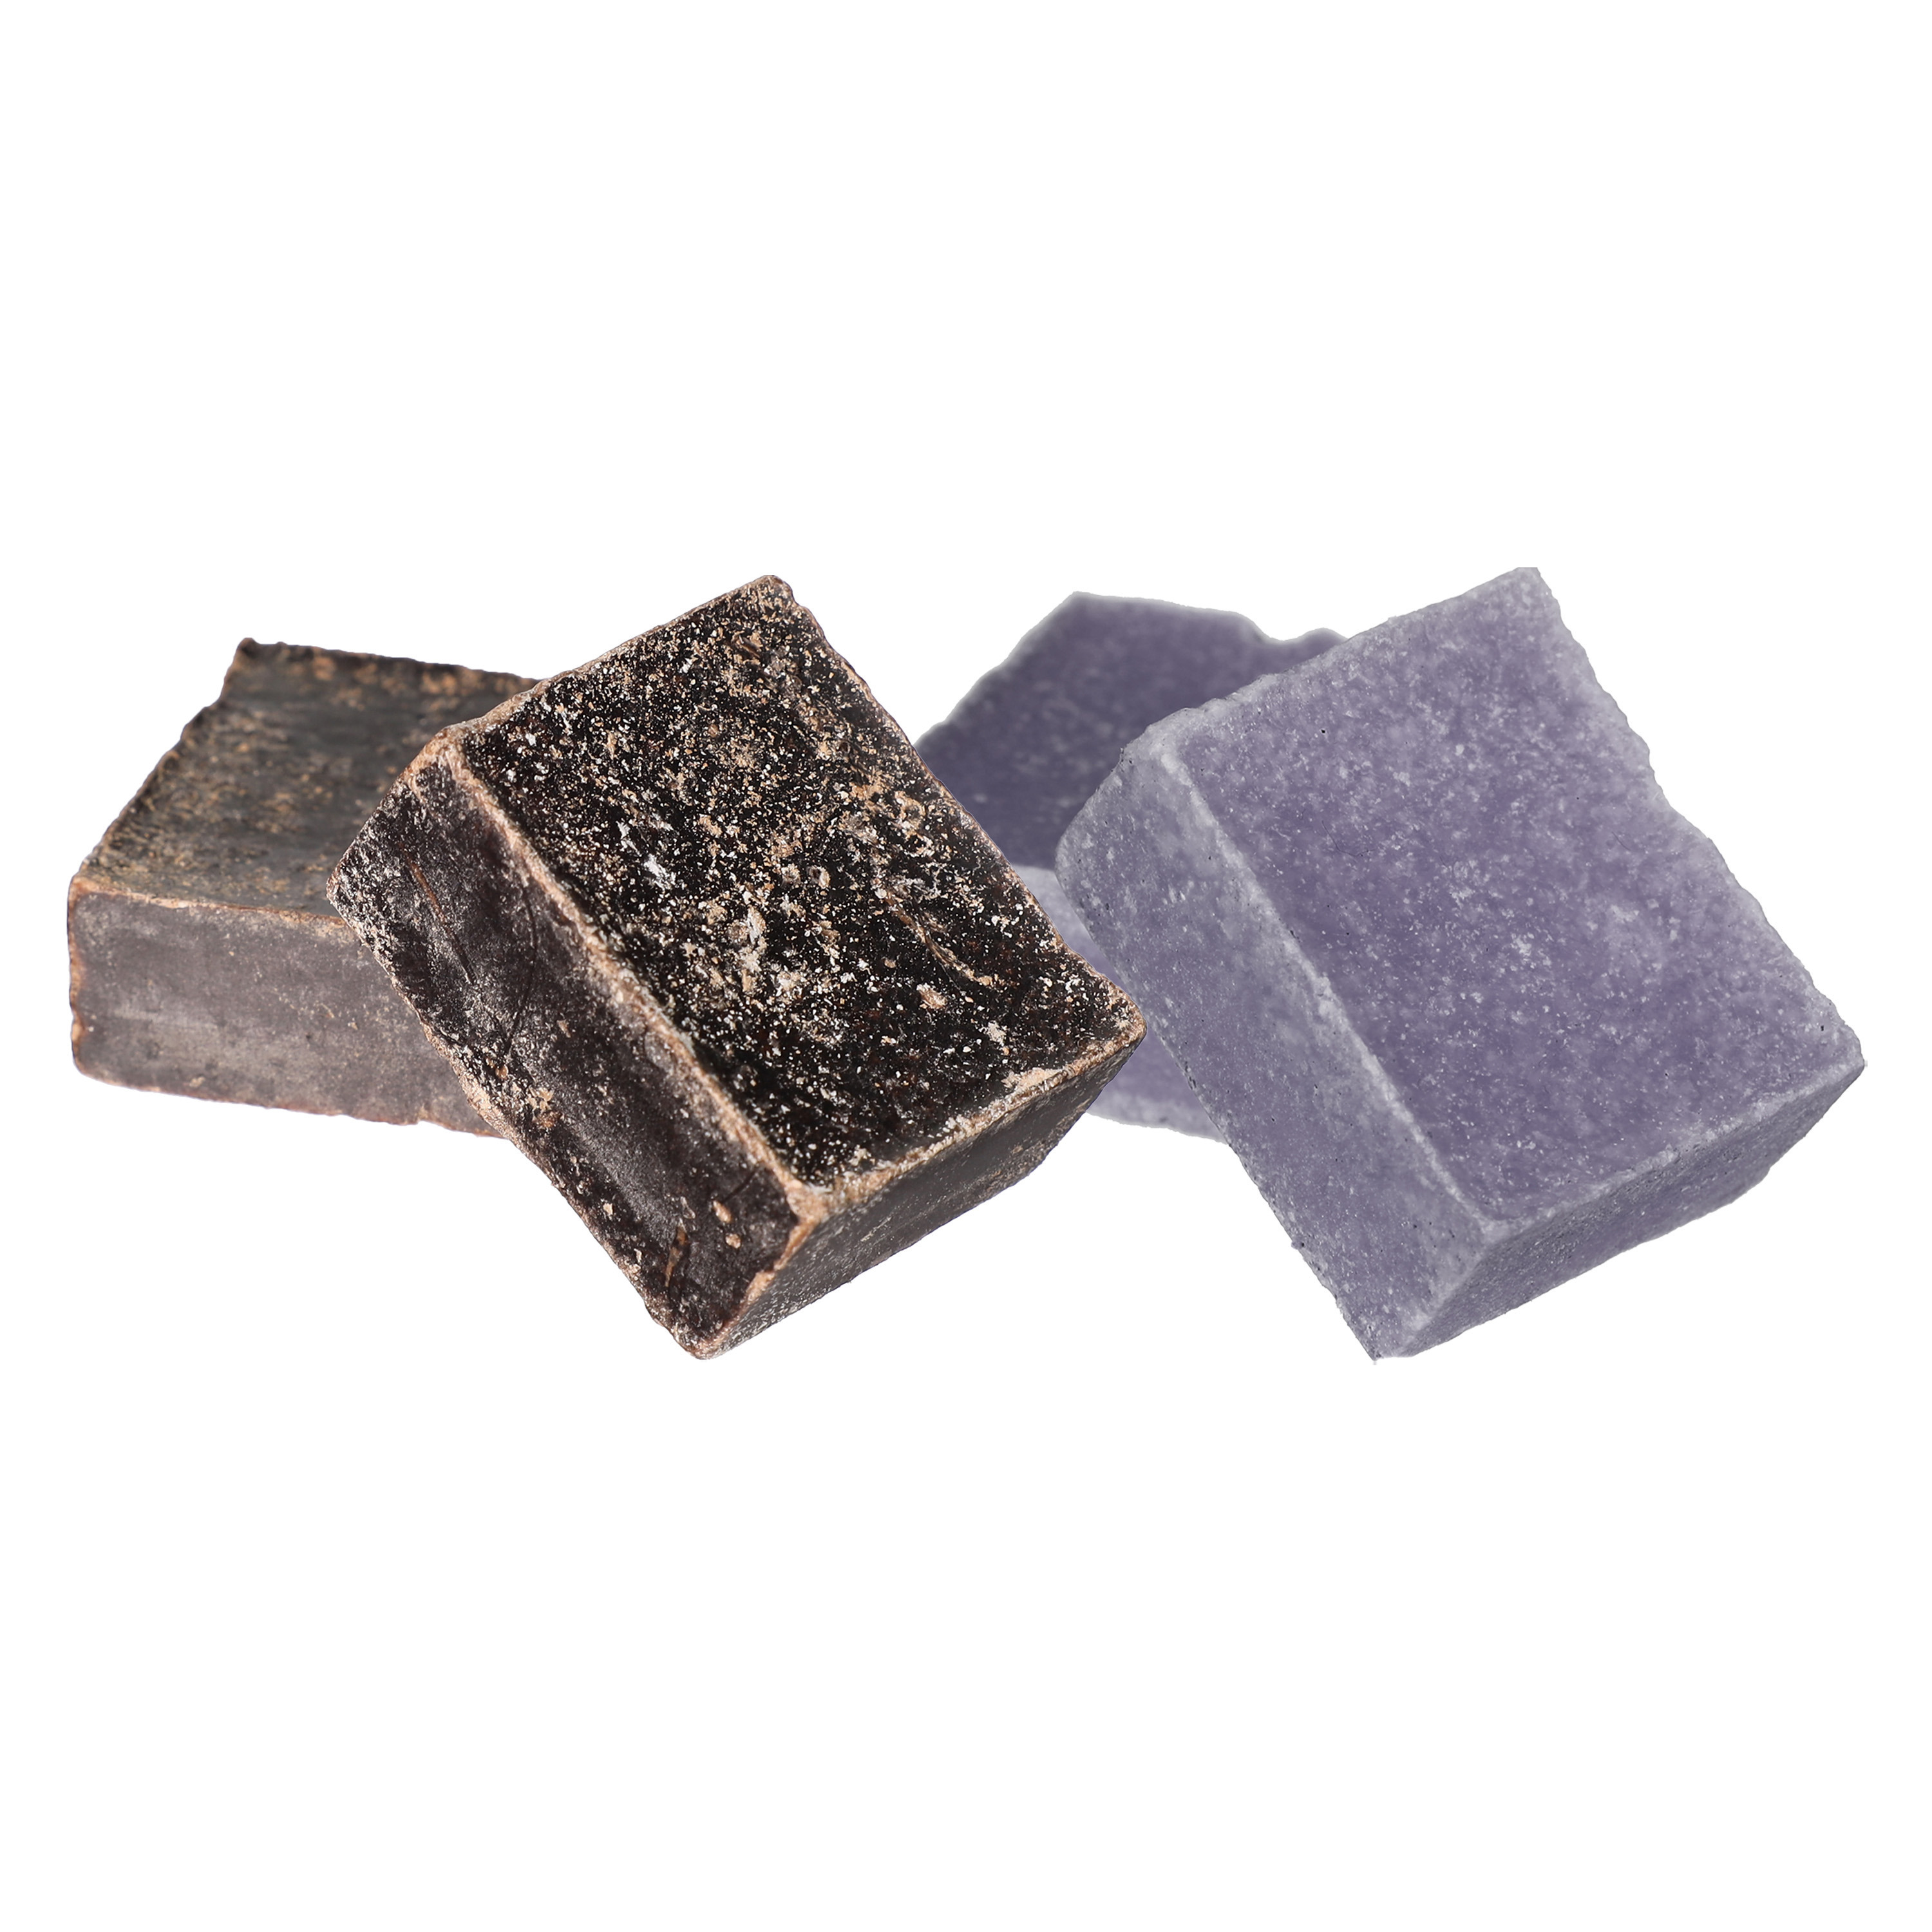 Amberblokjes-geurblokjes lavendel en ylang ylang 6x stuks huisparfum